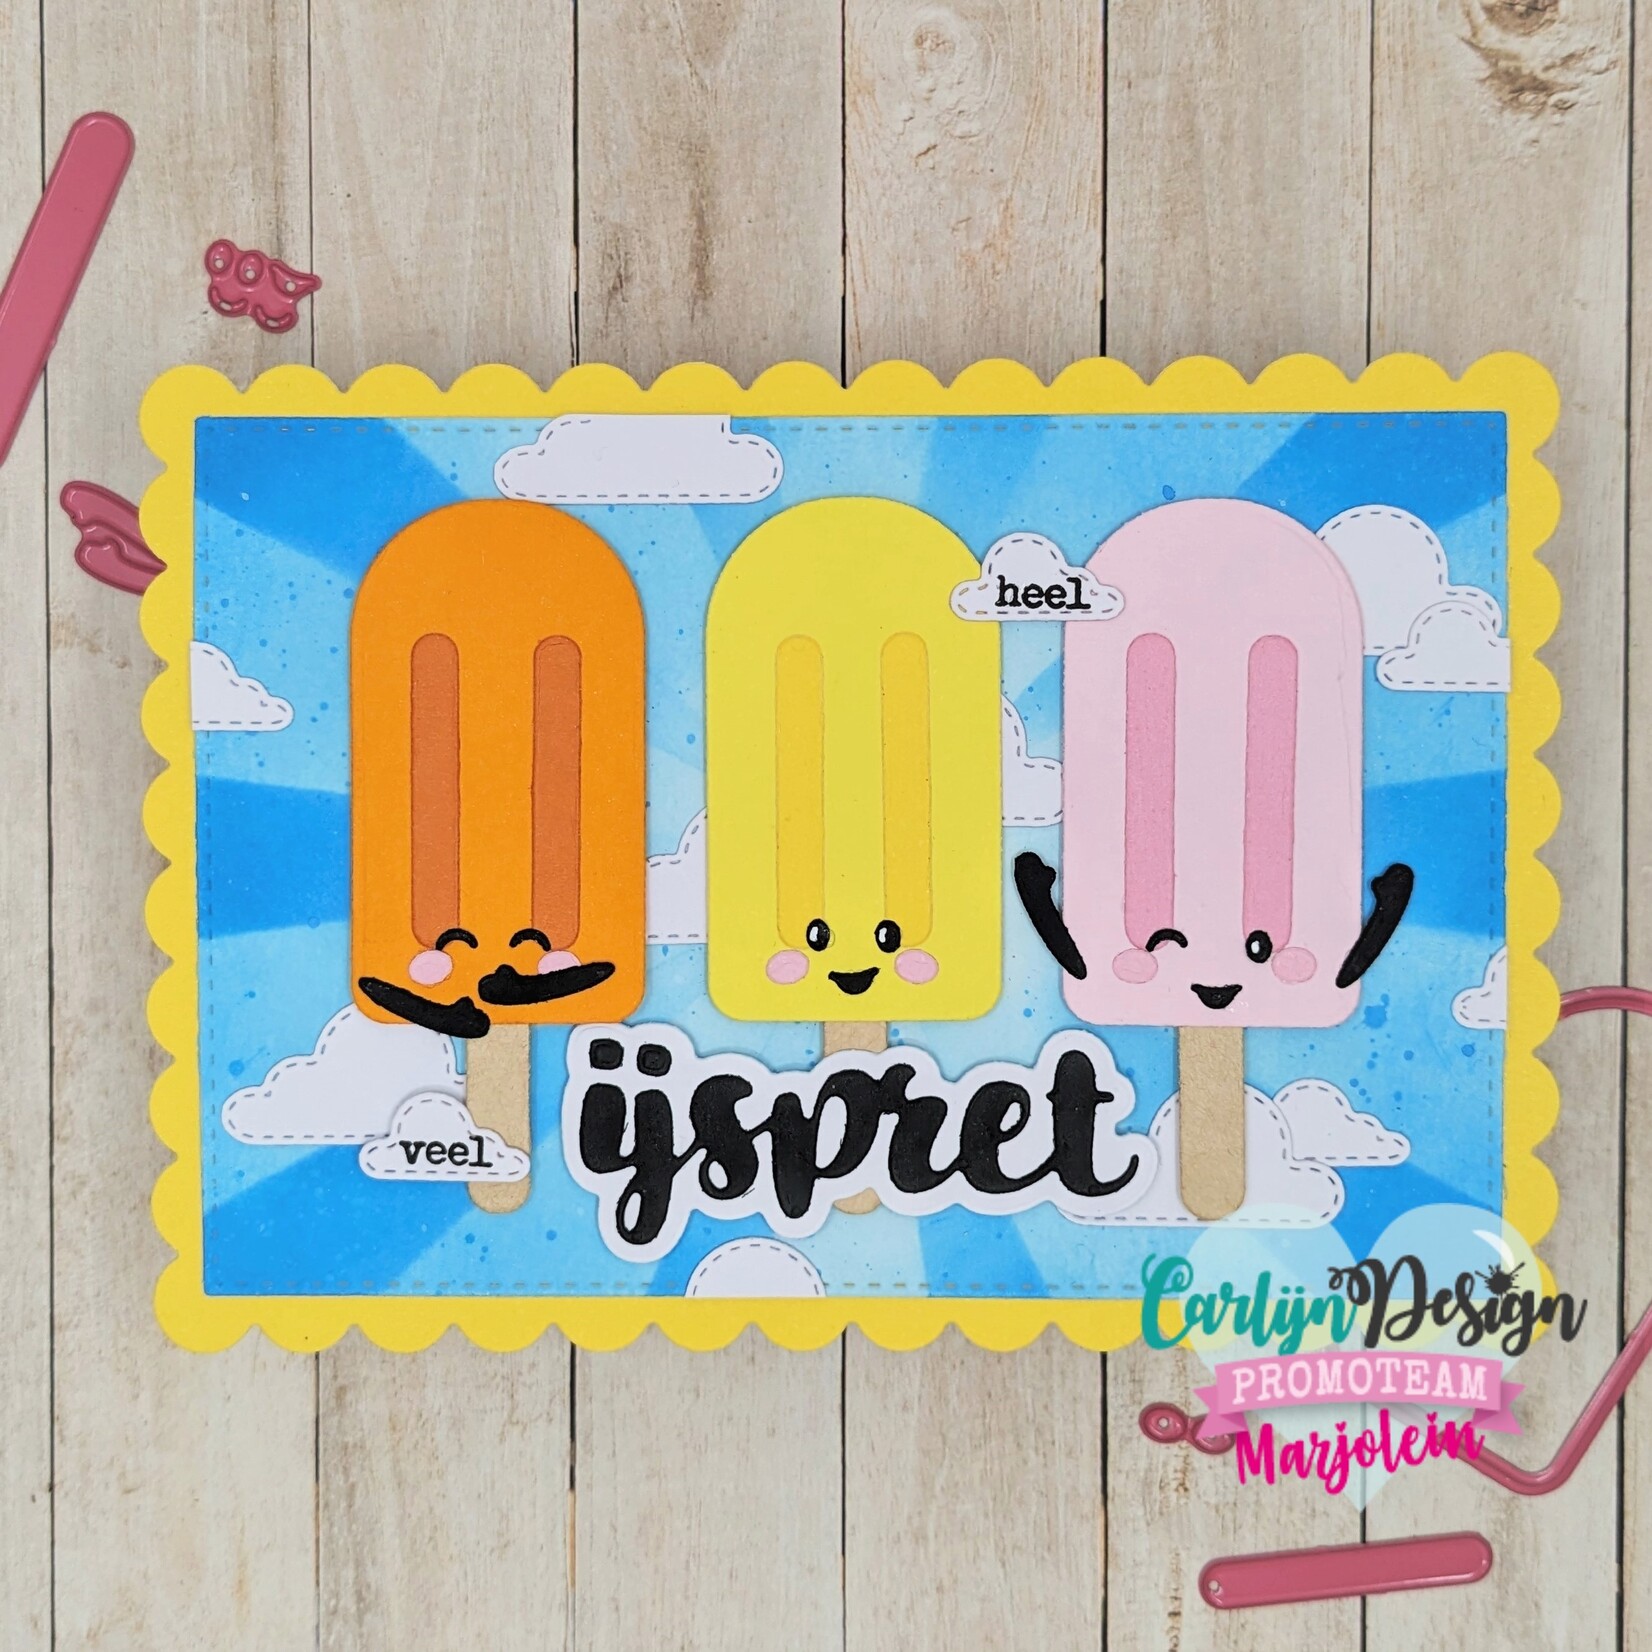 CarlijnDesign Snijmallen Popsicle Smiles – door Jocelijne Design